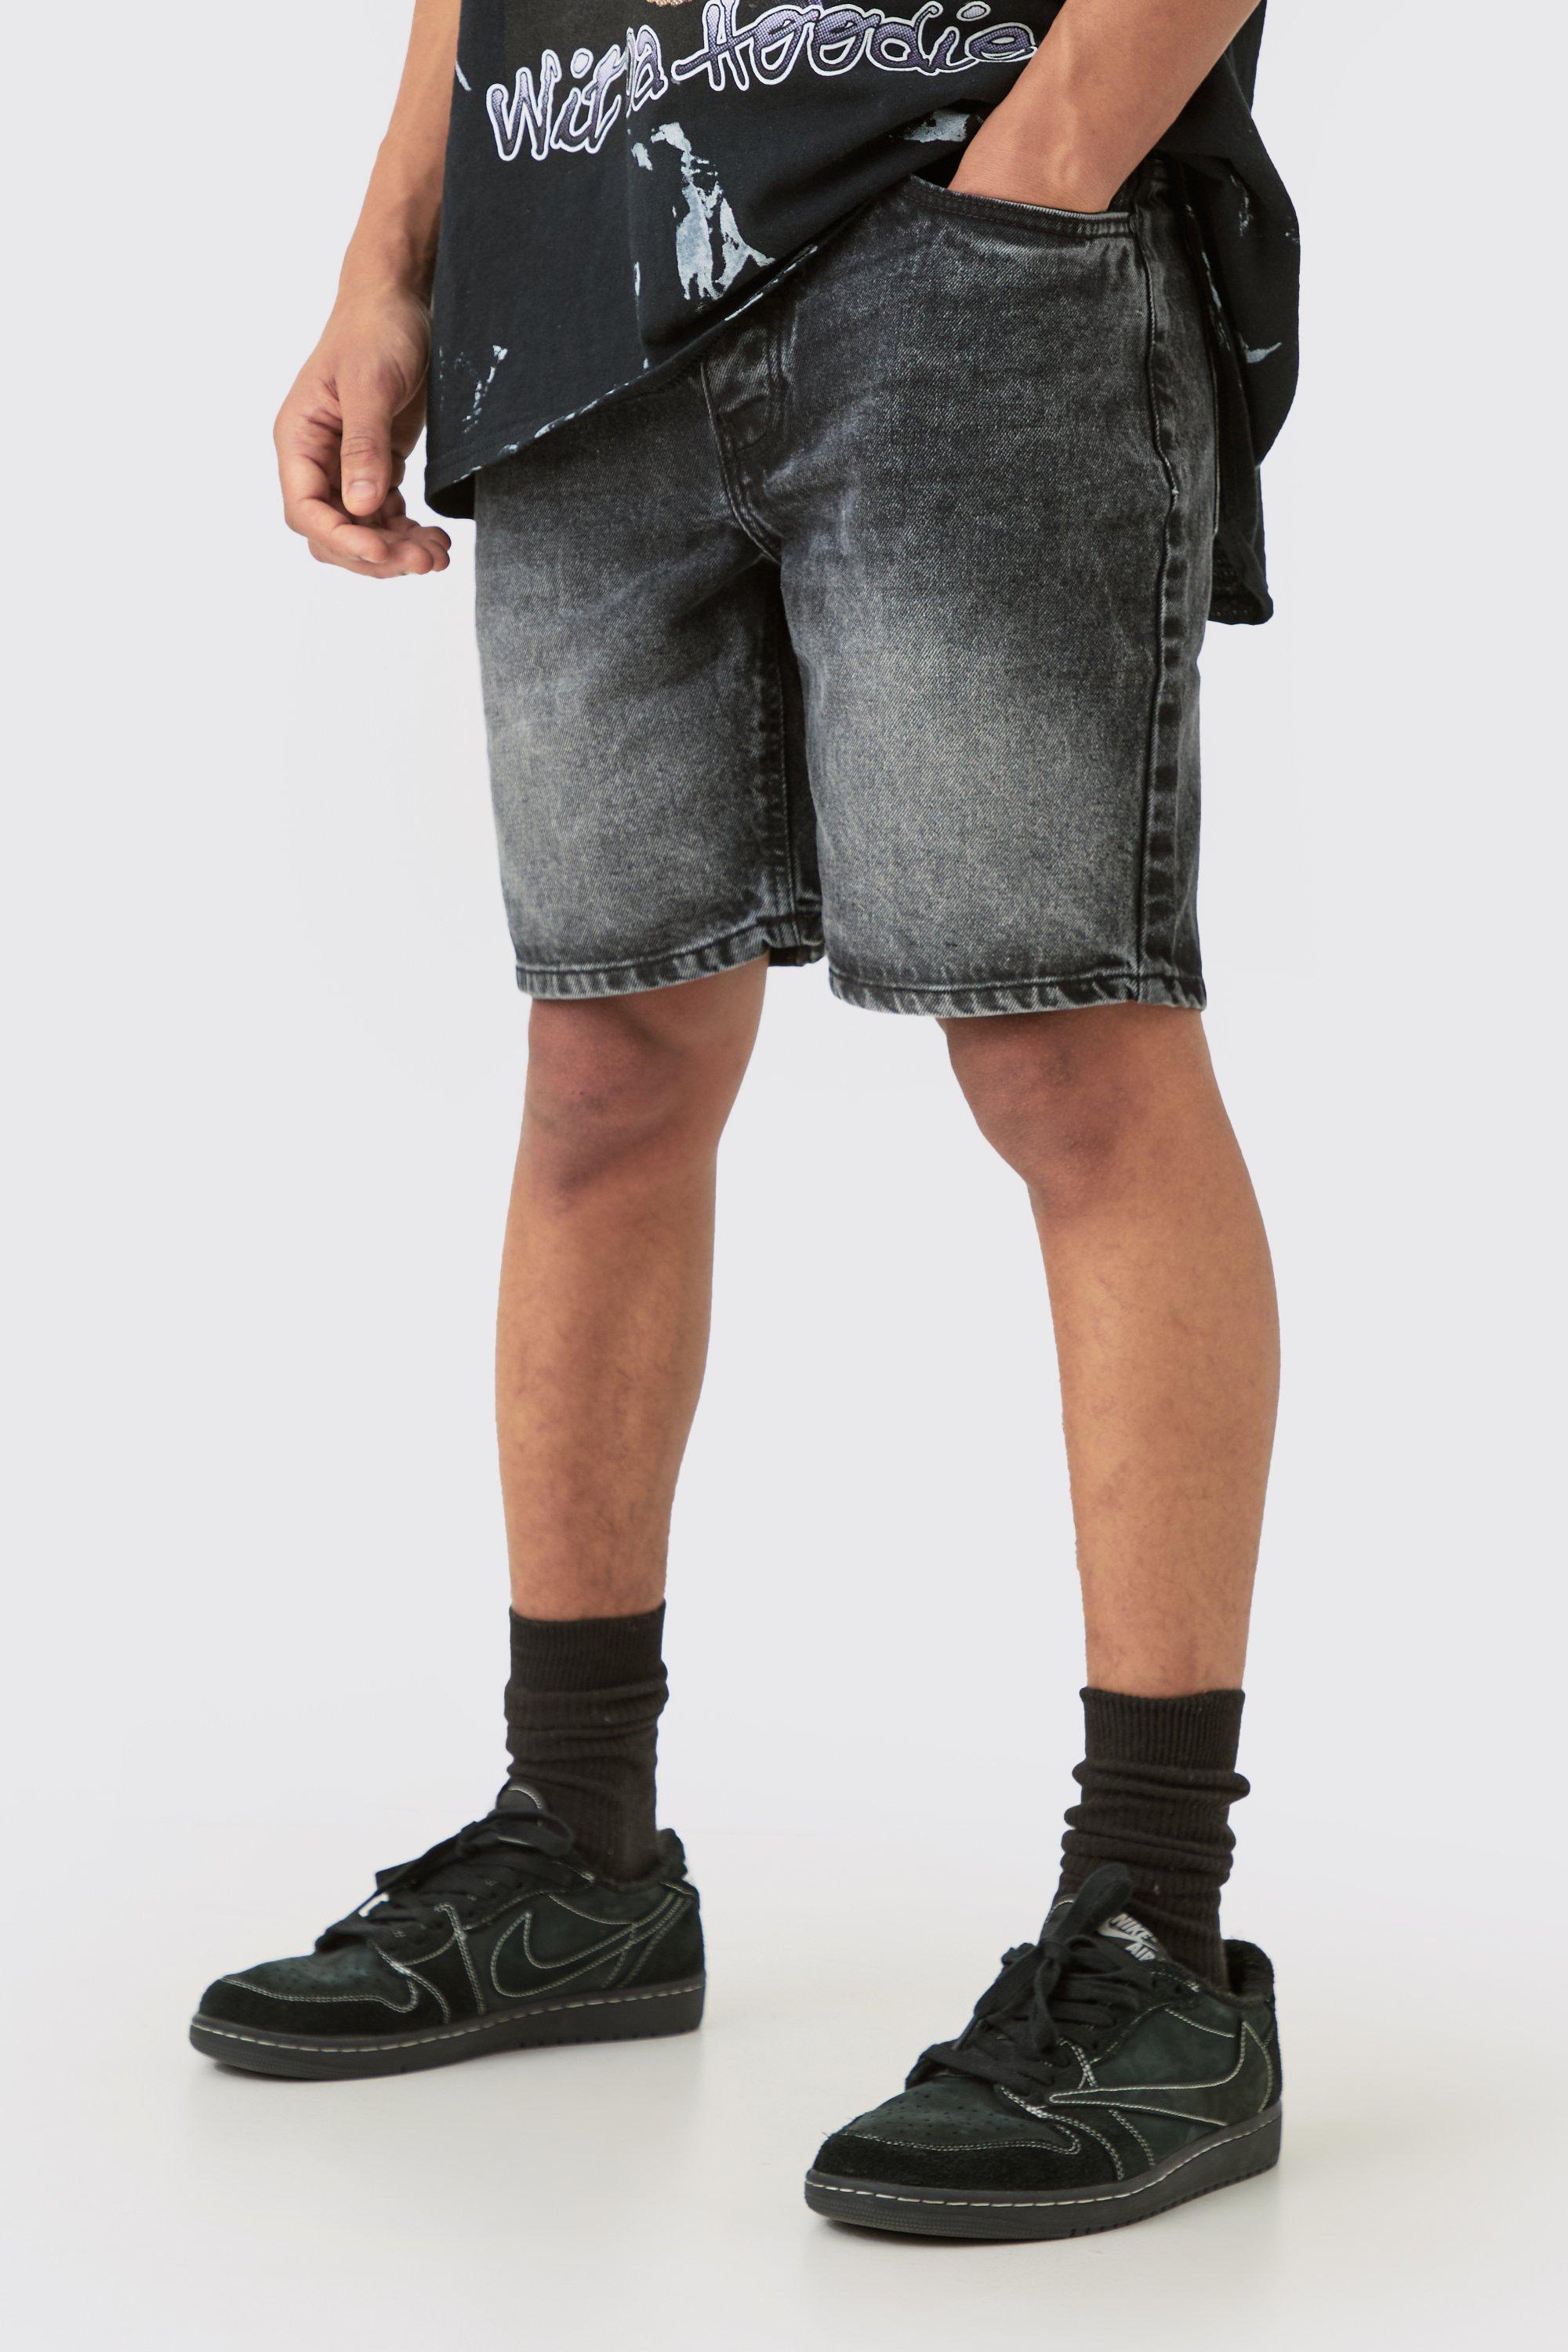 Image of Pantaloncini in denim Slim Fit in denim rigido color antracite con spacco in vita, Grigio